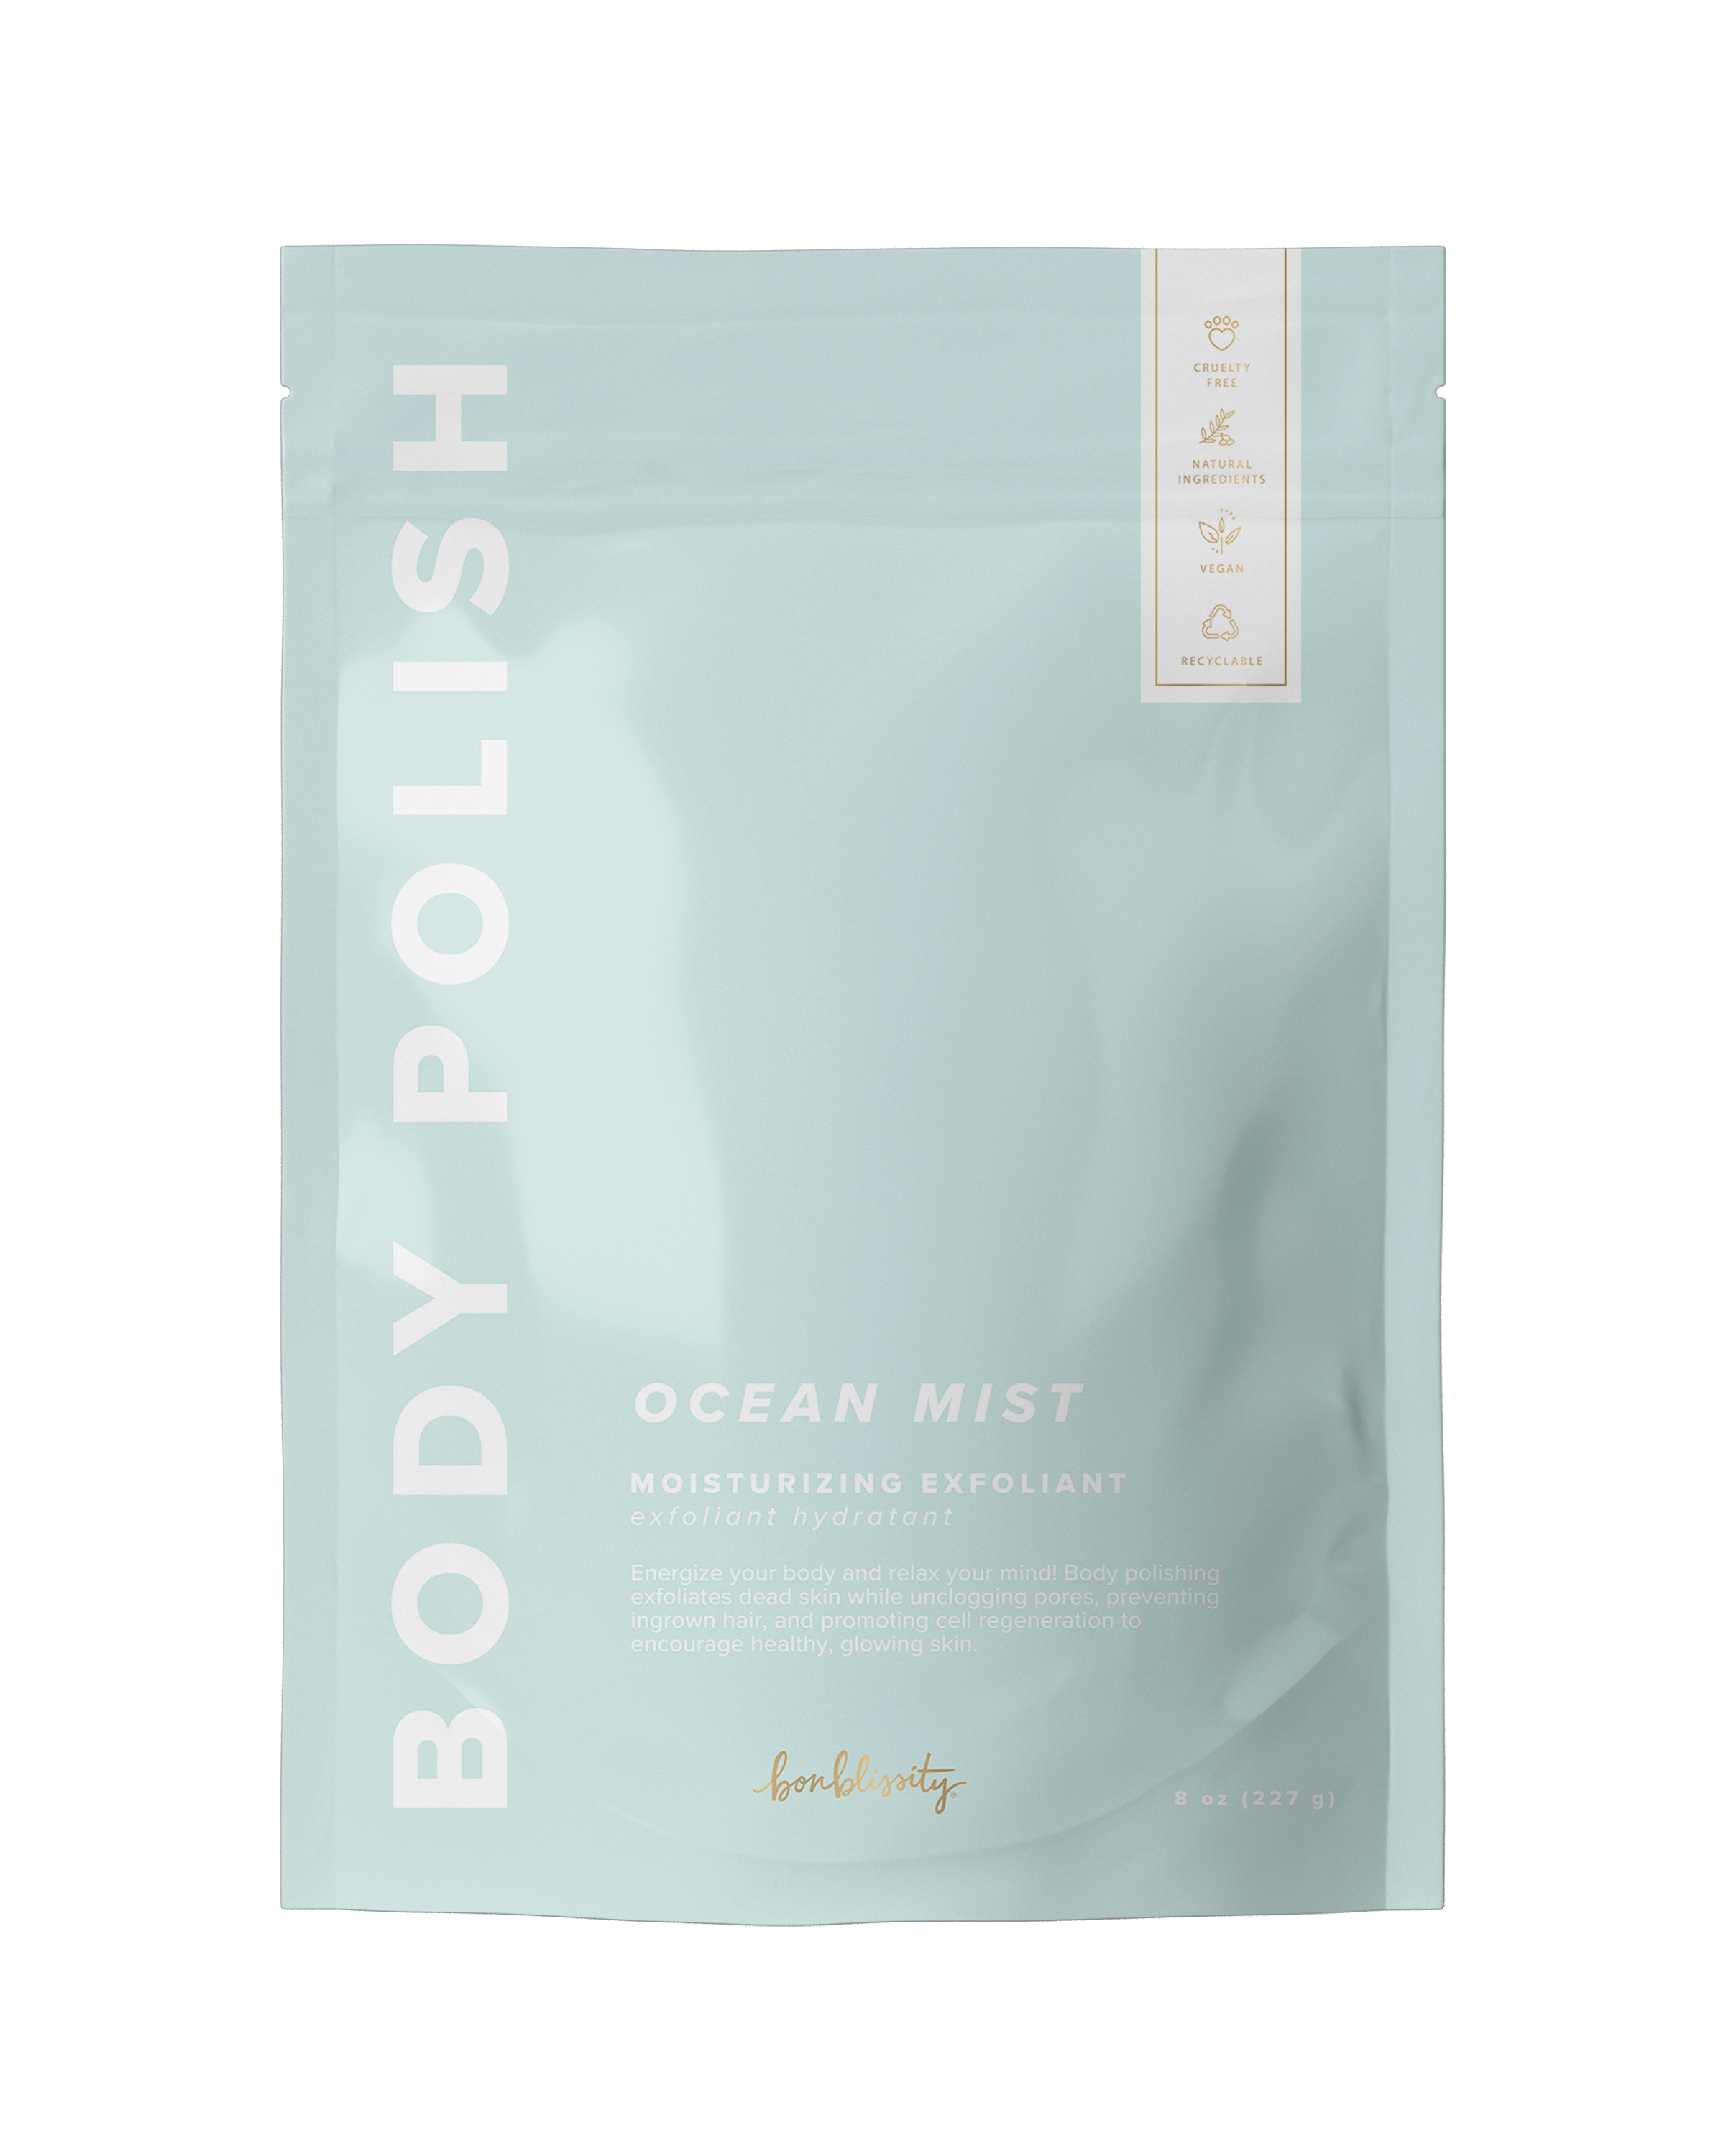 Body Polish Body Scrub - Ocean Mist (MSRP $24)